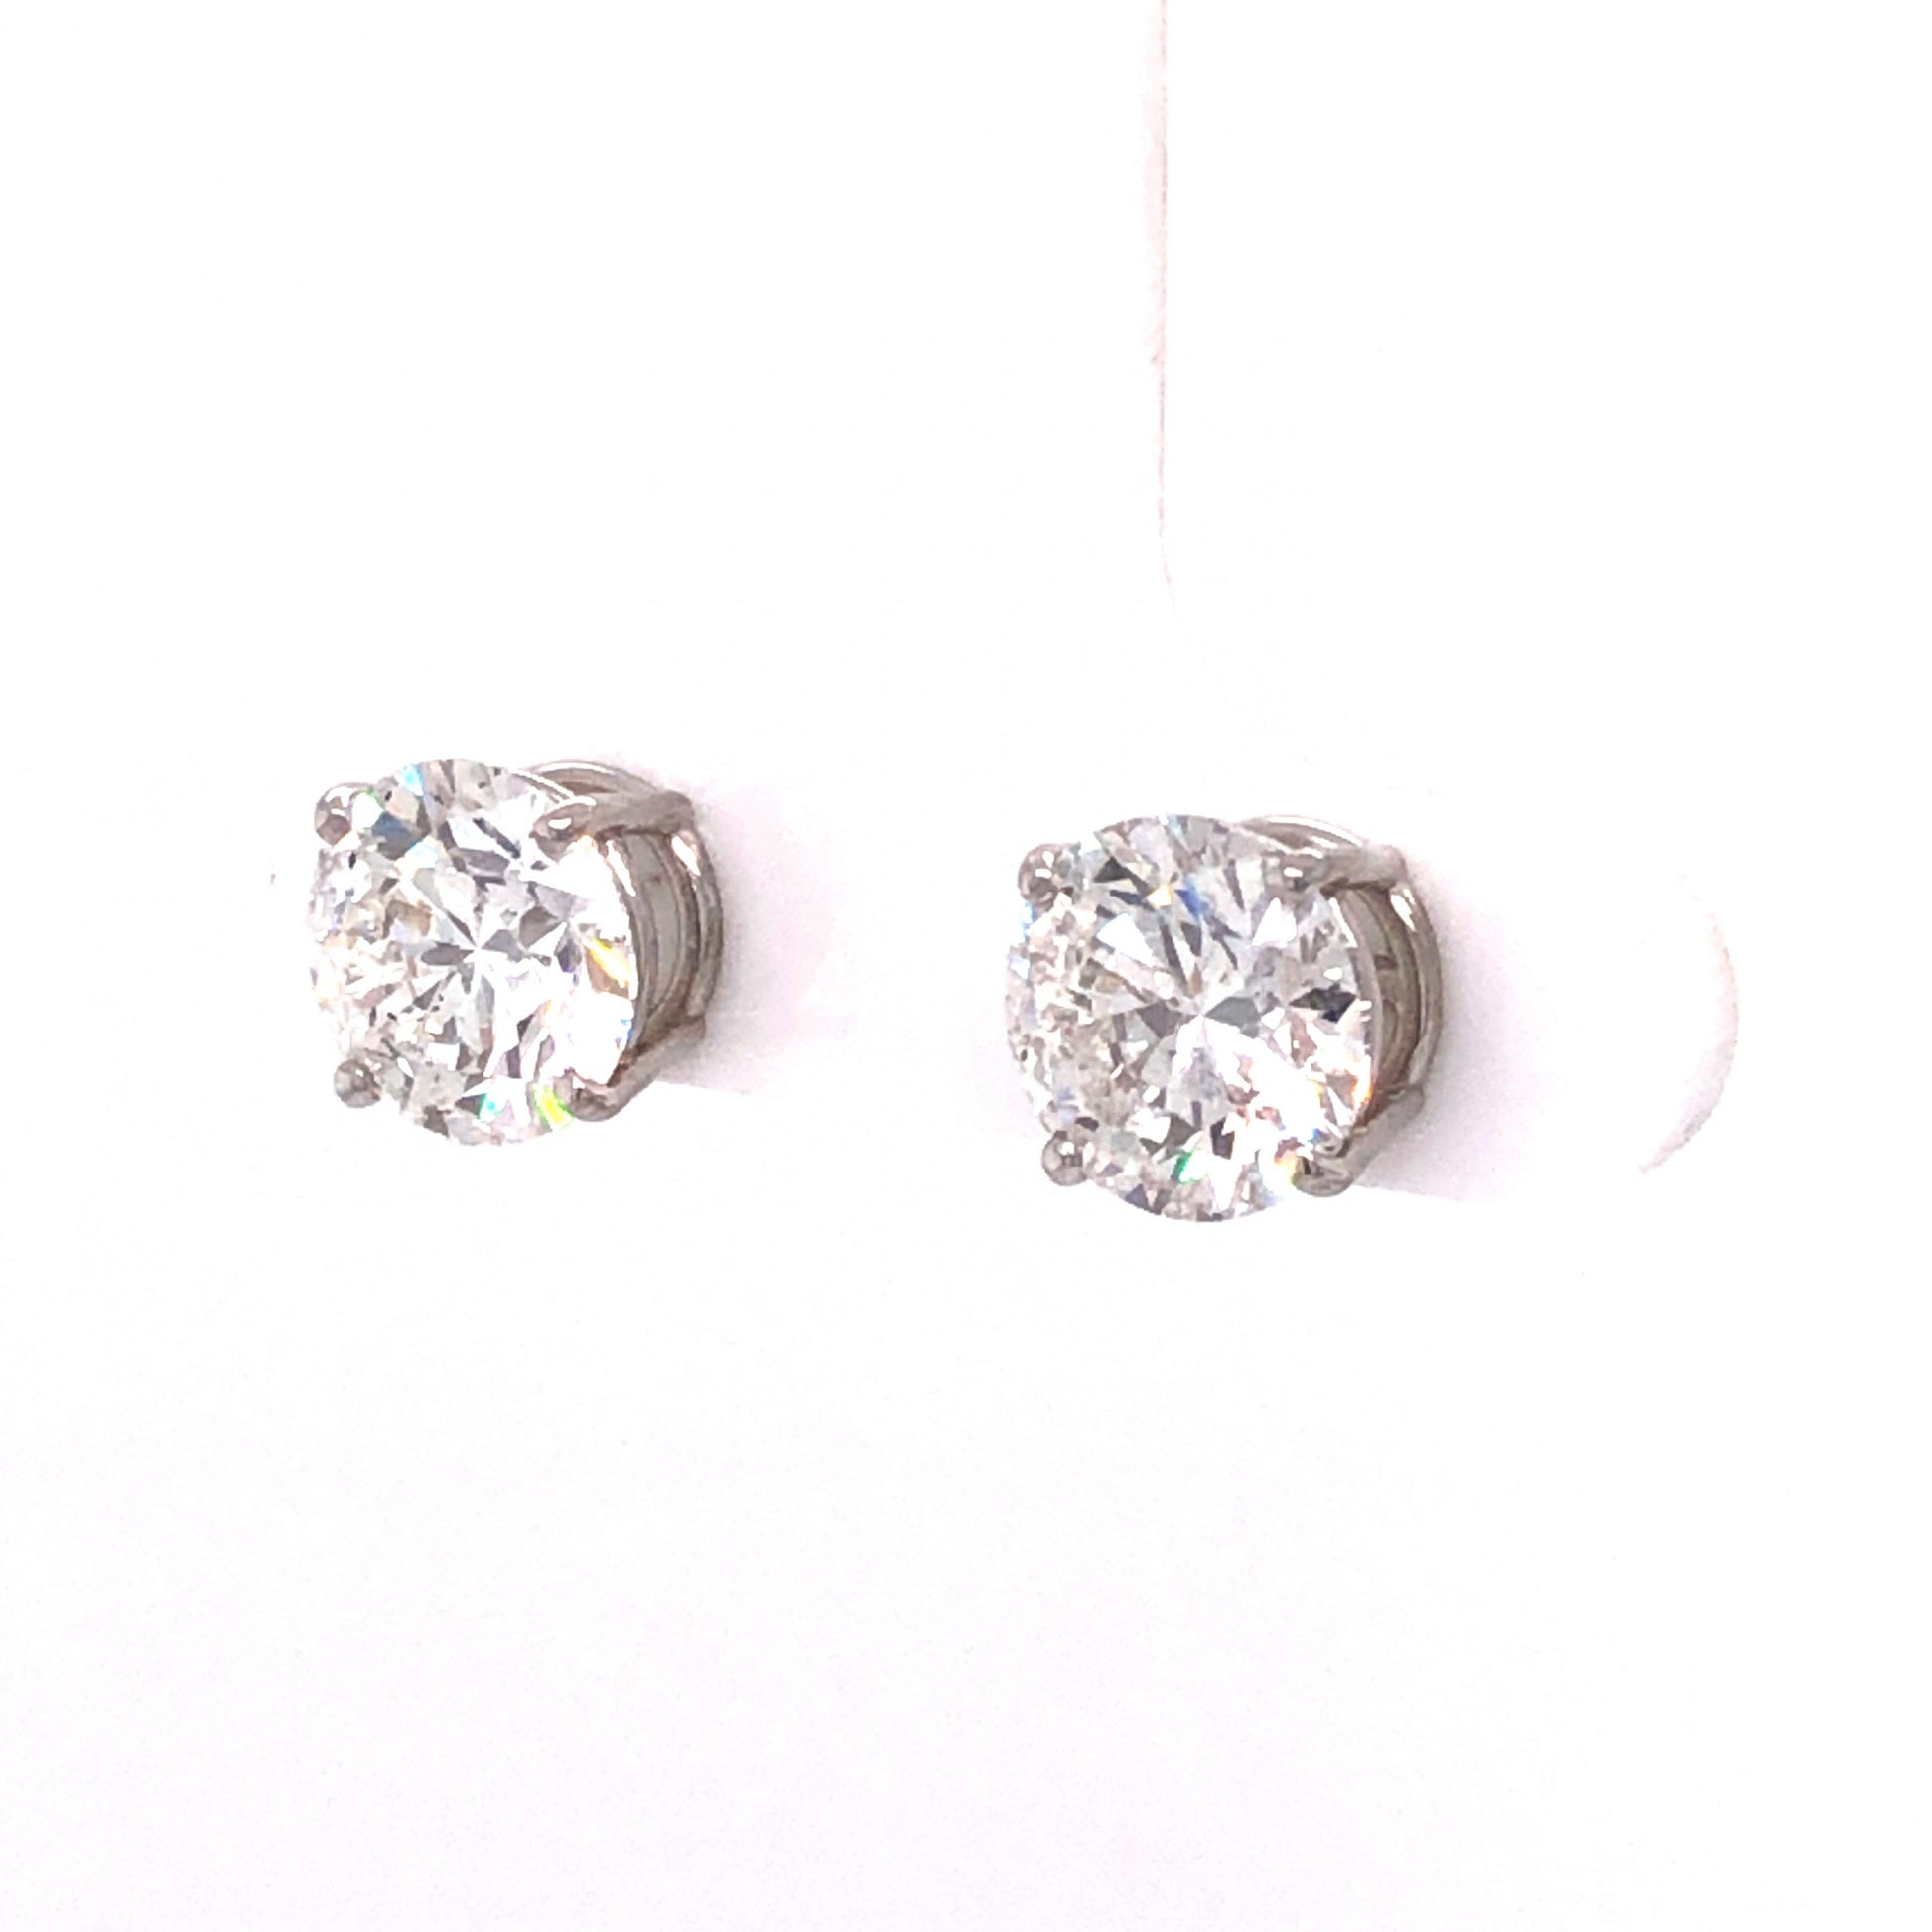 4.10 GIA Diamond Stud Earrings in 14k White Gold